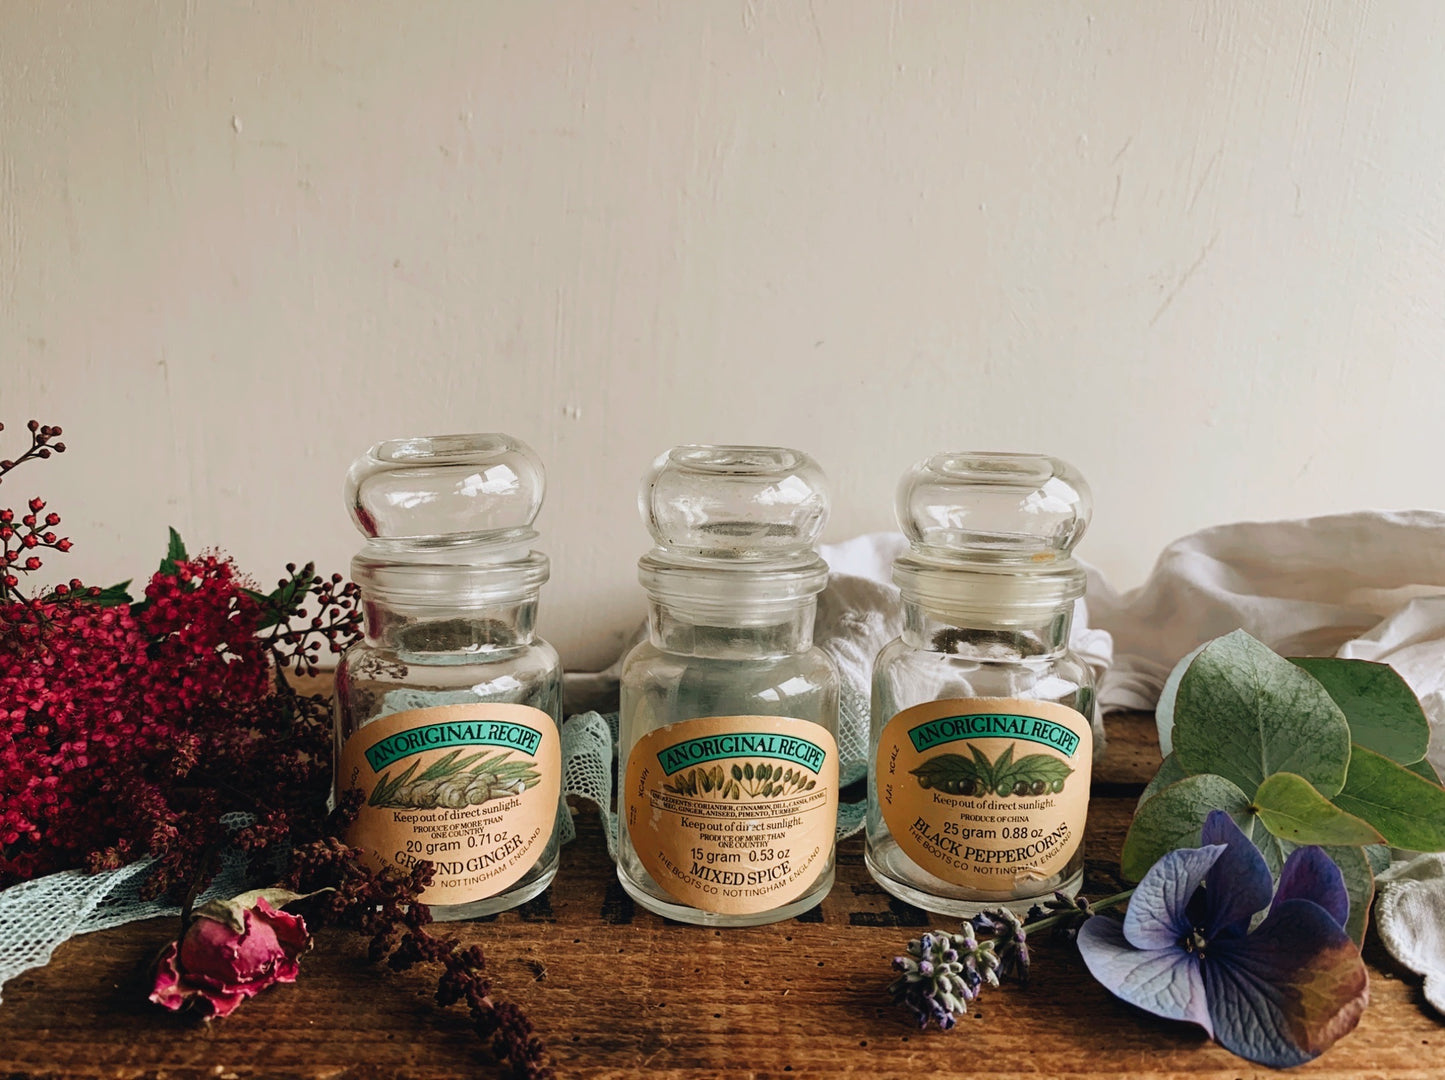 Vintage Herb / Spice Bottles (jars) sold separately